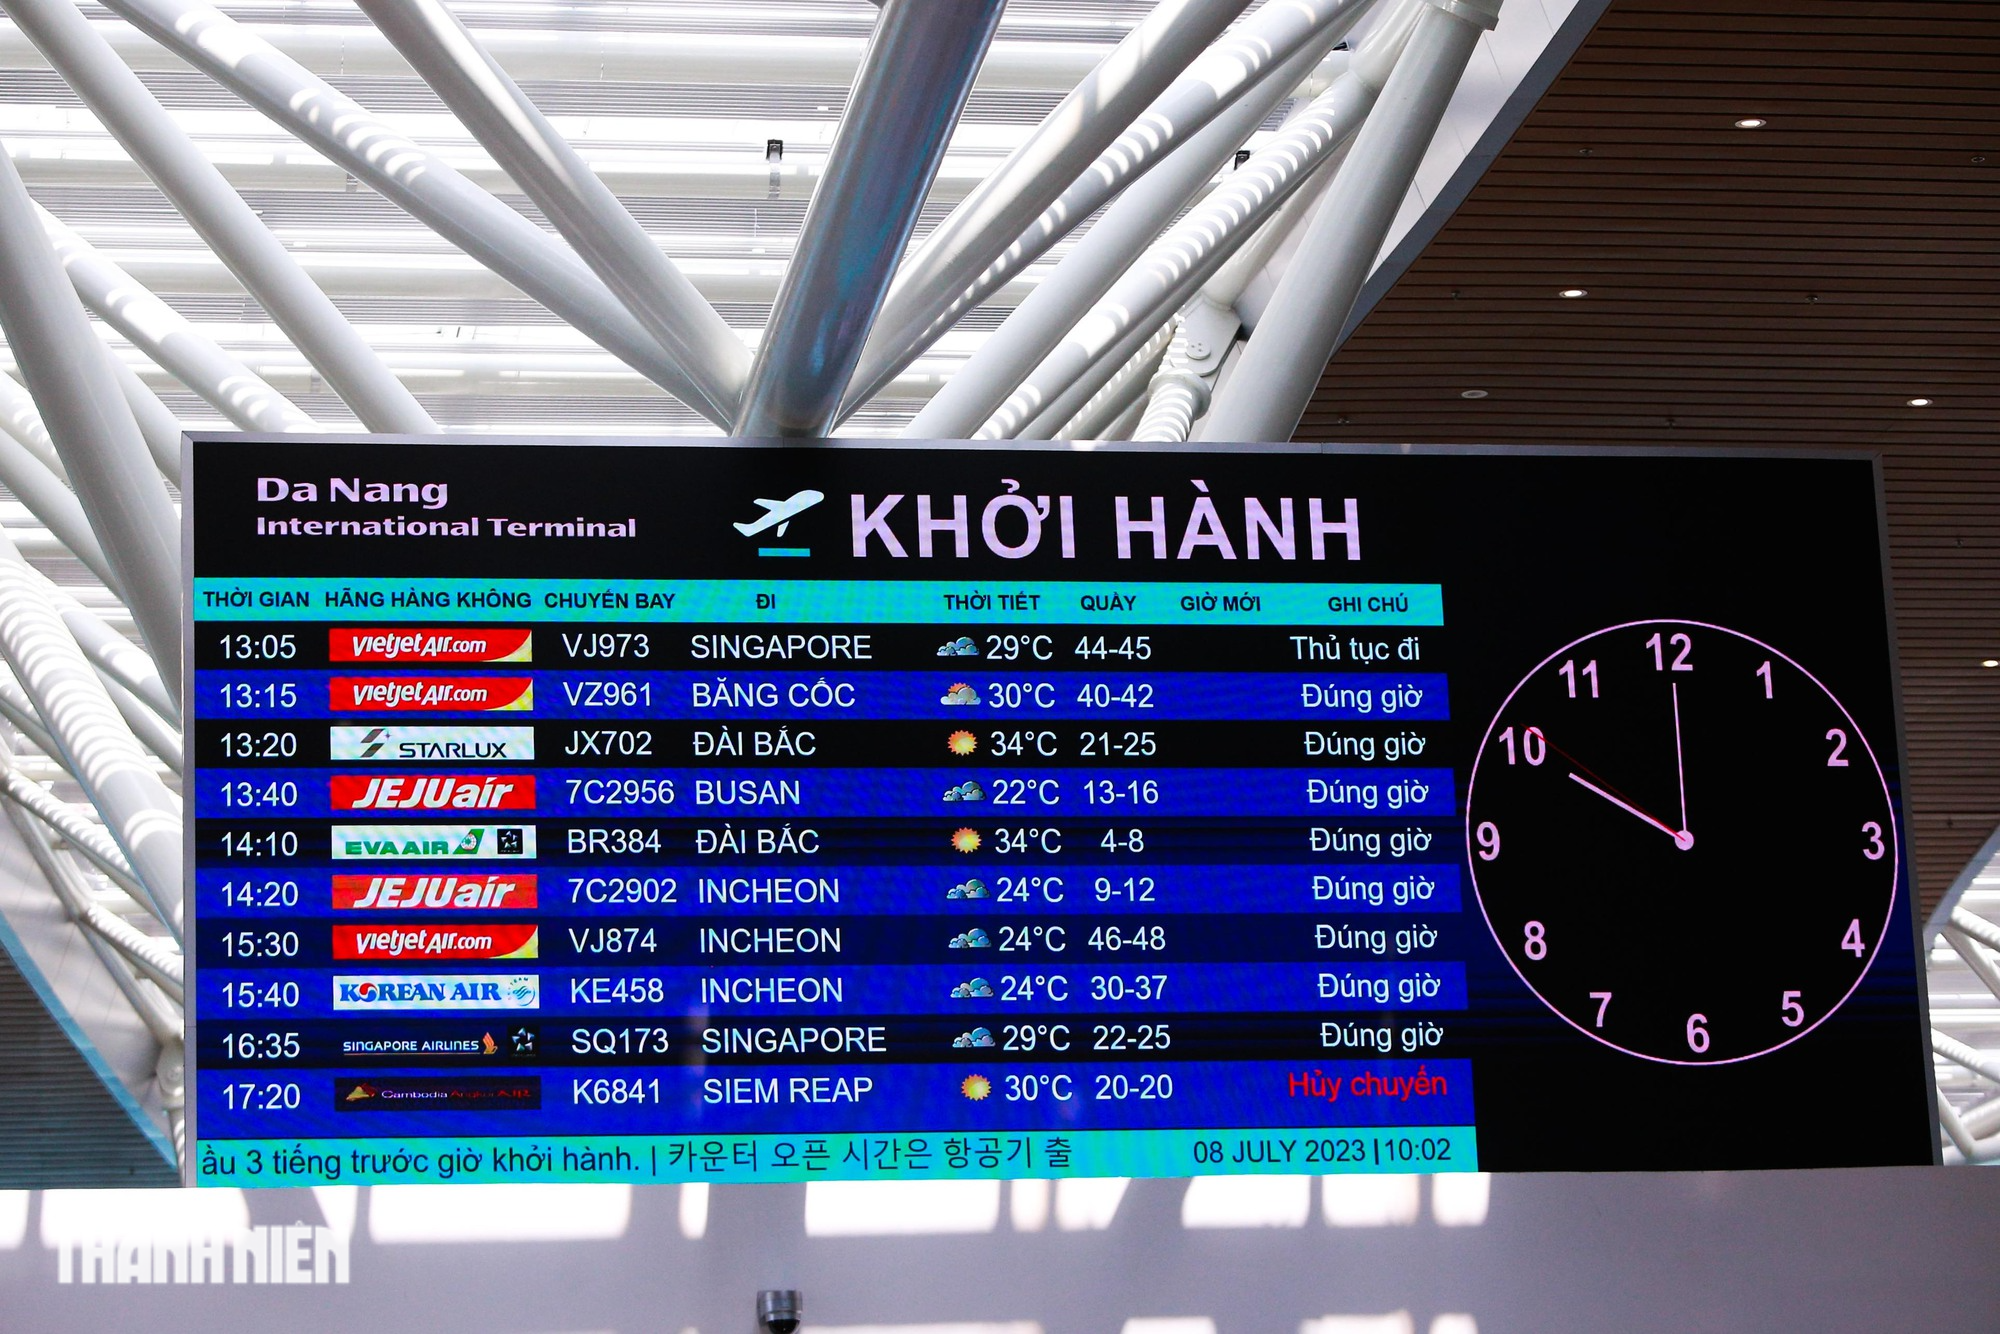 Cơn sốt BLACKPINK len lỏi khắp sân bay Đà Nẵng khiến hành khách choáng ngợp   - Ảnh 5.